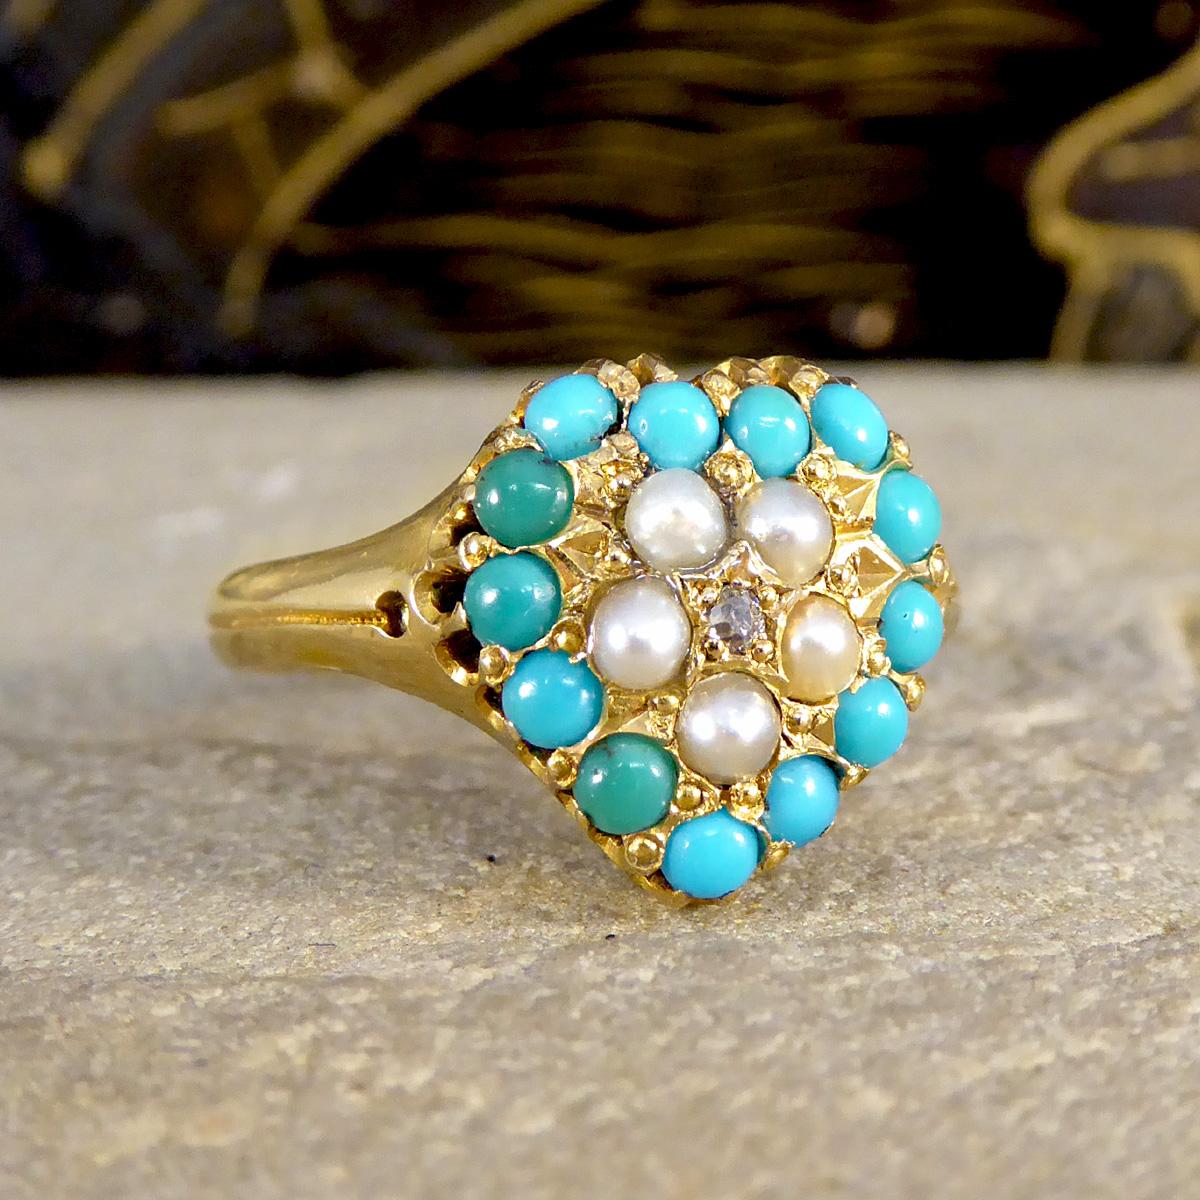 Tauchen Sie ein in die romantische Ära der viktorianischen Eleganz mit unserem herzförmigen Ring mit Türkisen, Perlen und Diamanten. Er wurde 1871 gefertigt und ist ein Schatz aus der Vergangenheit, der das komplizierte und gefühlvolle Design der